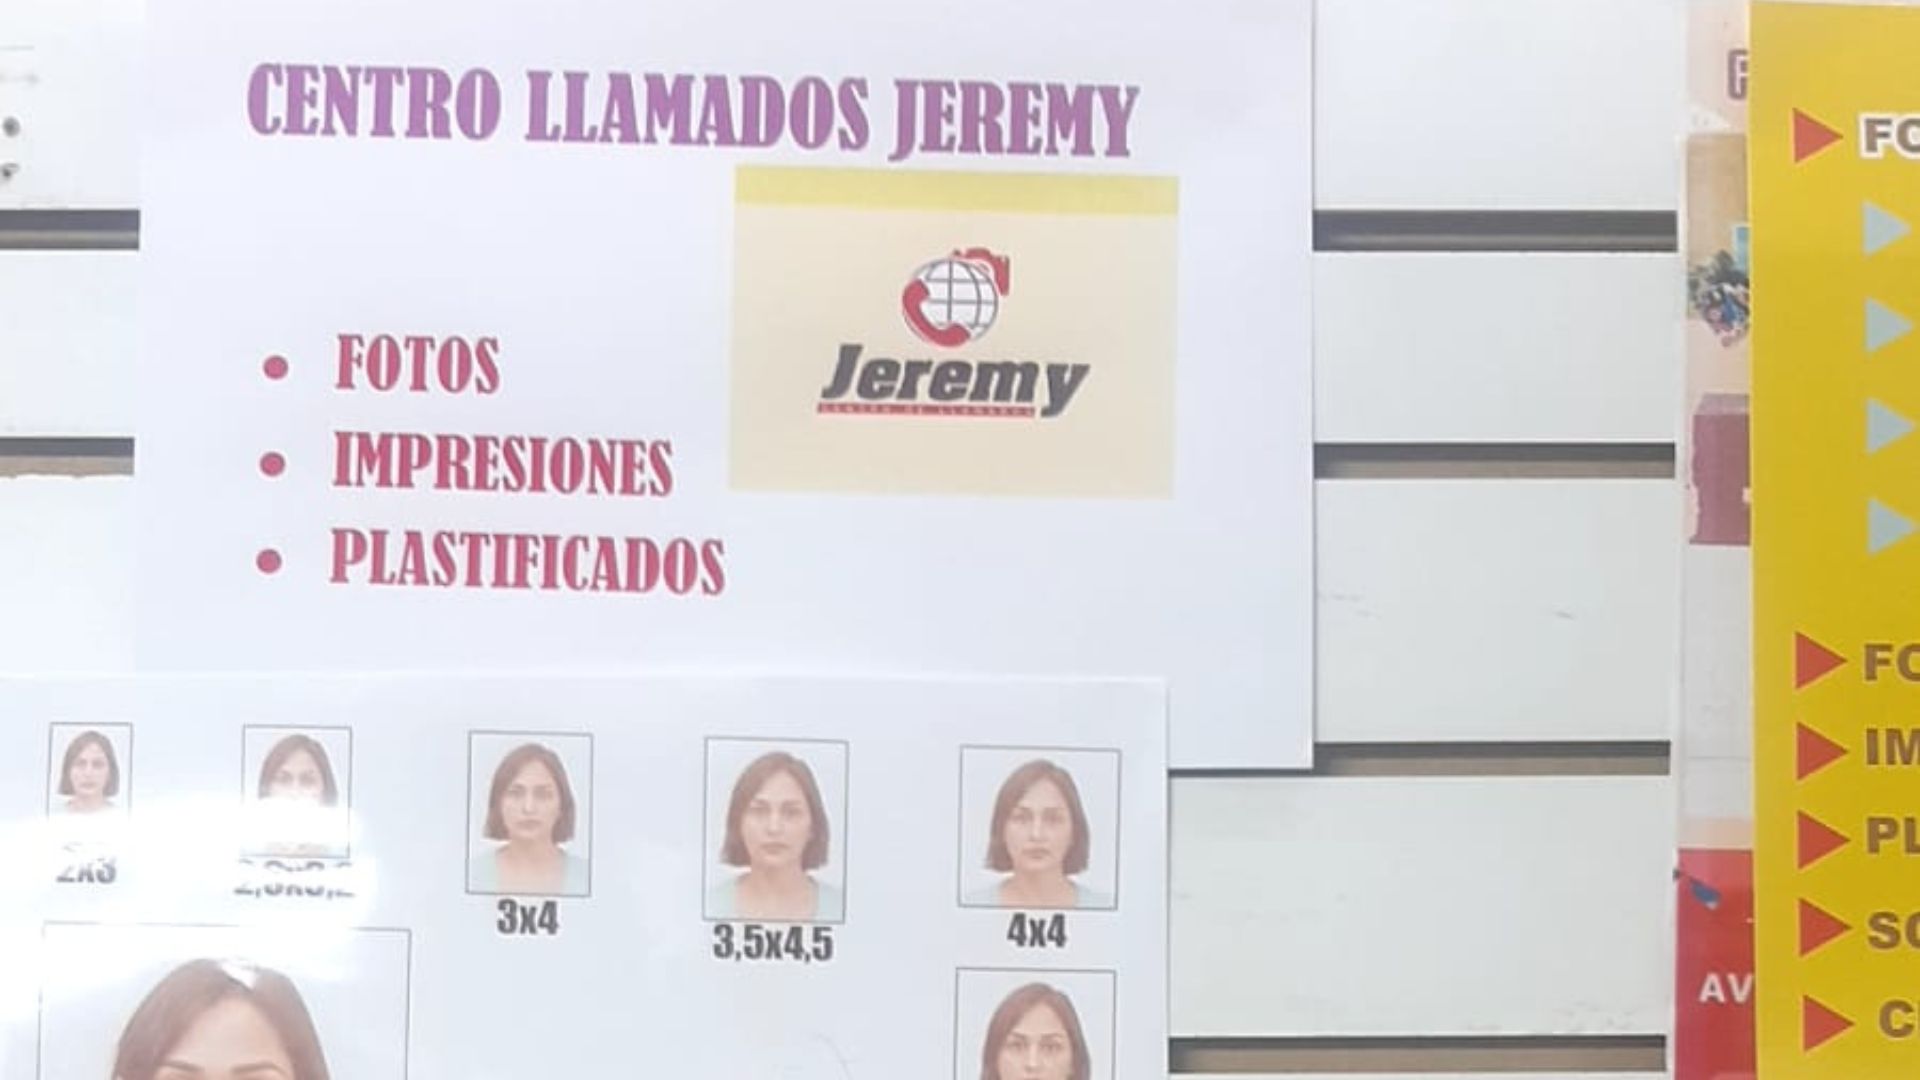 CENTRO DE LLAMADAS JEREMY SPA